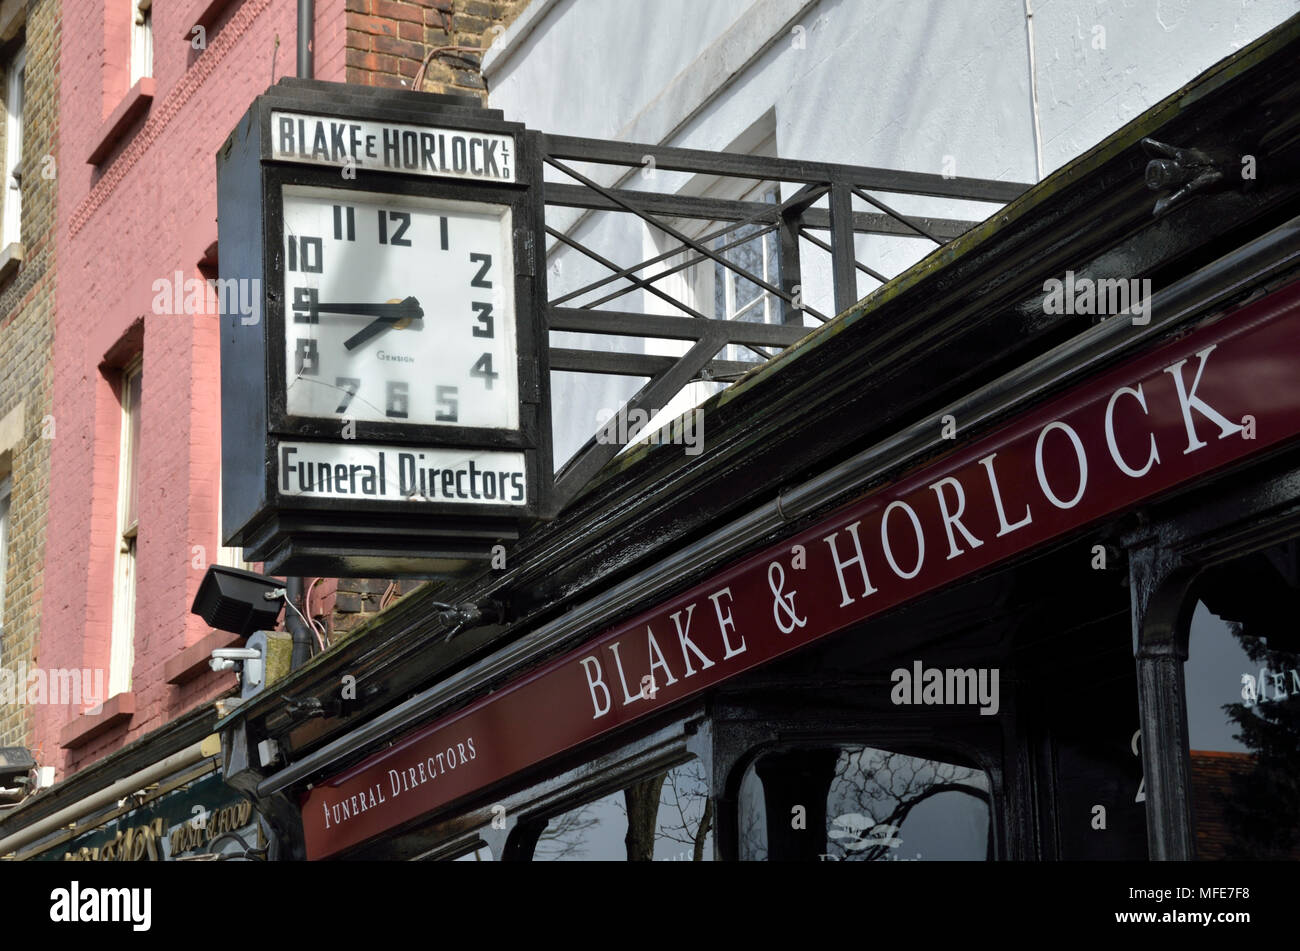 Blake et Horlock funèbres dans Enfield, Londres, Royaume-Uni. Banque D'Images